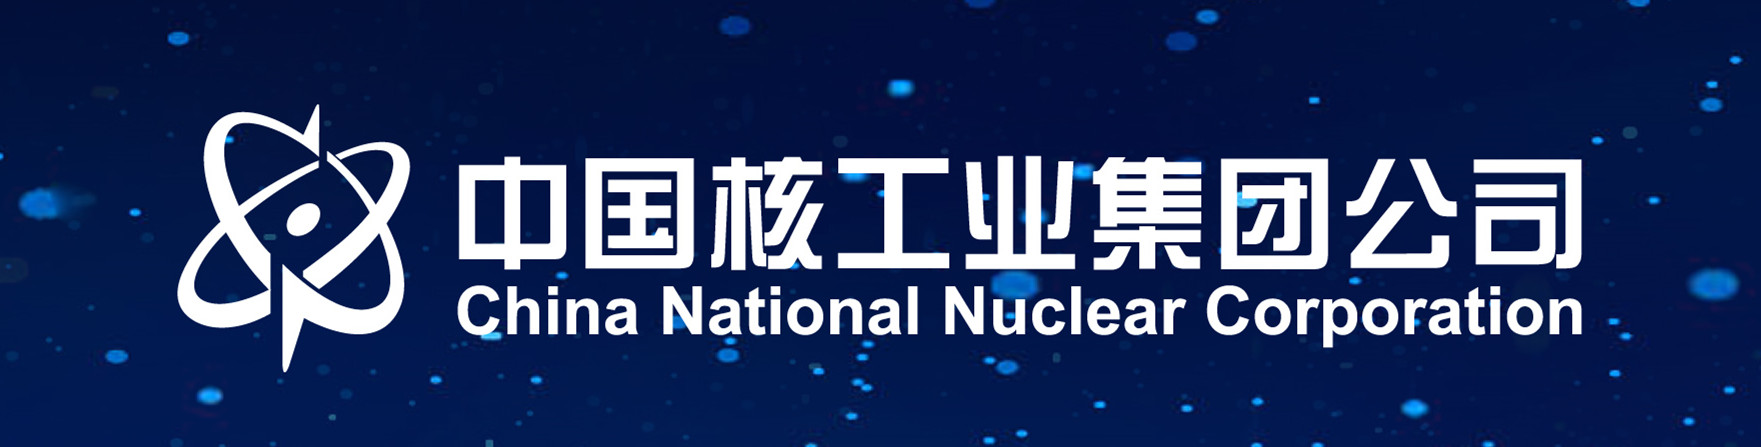 宣讲单位:中国核电工程有限公司郑州分公司 工商查询 宣讲时间:2020